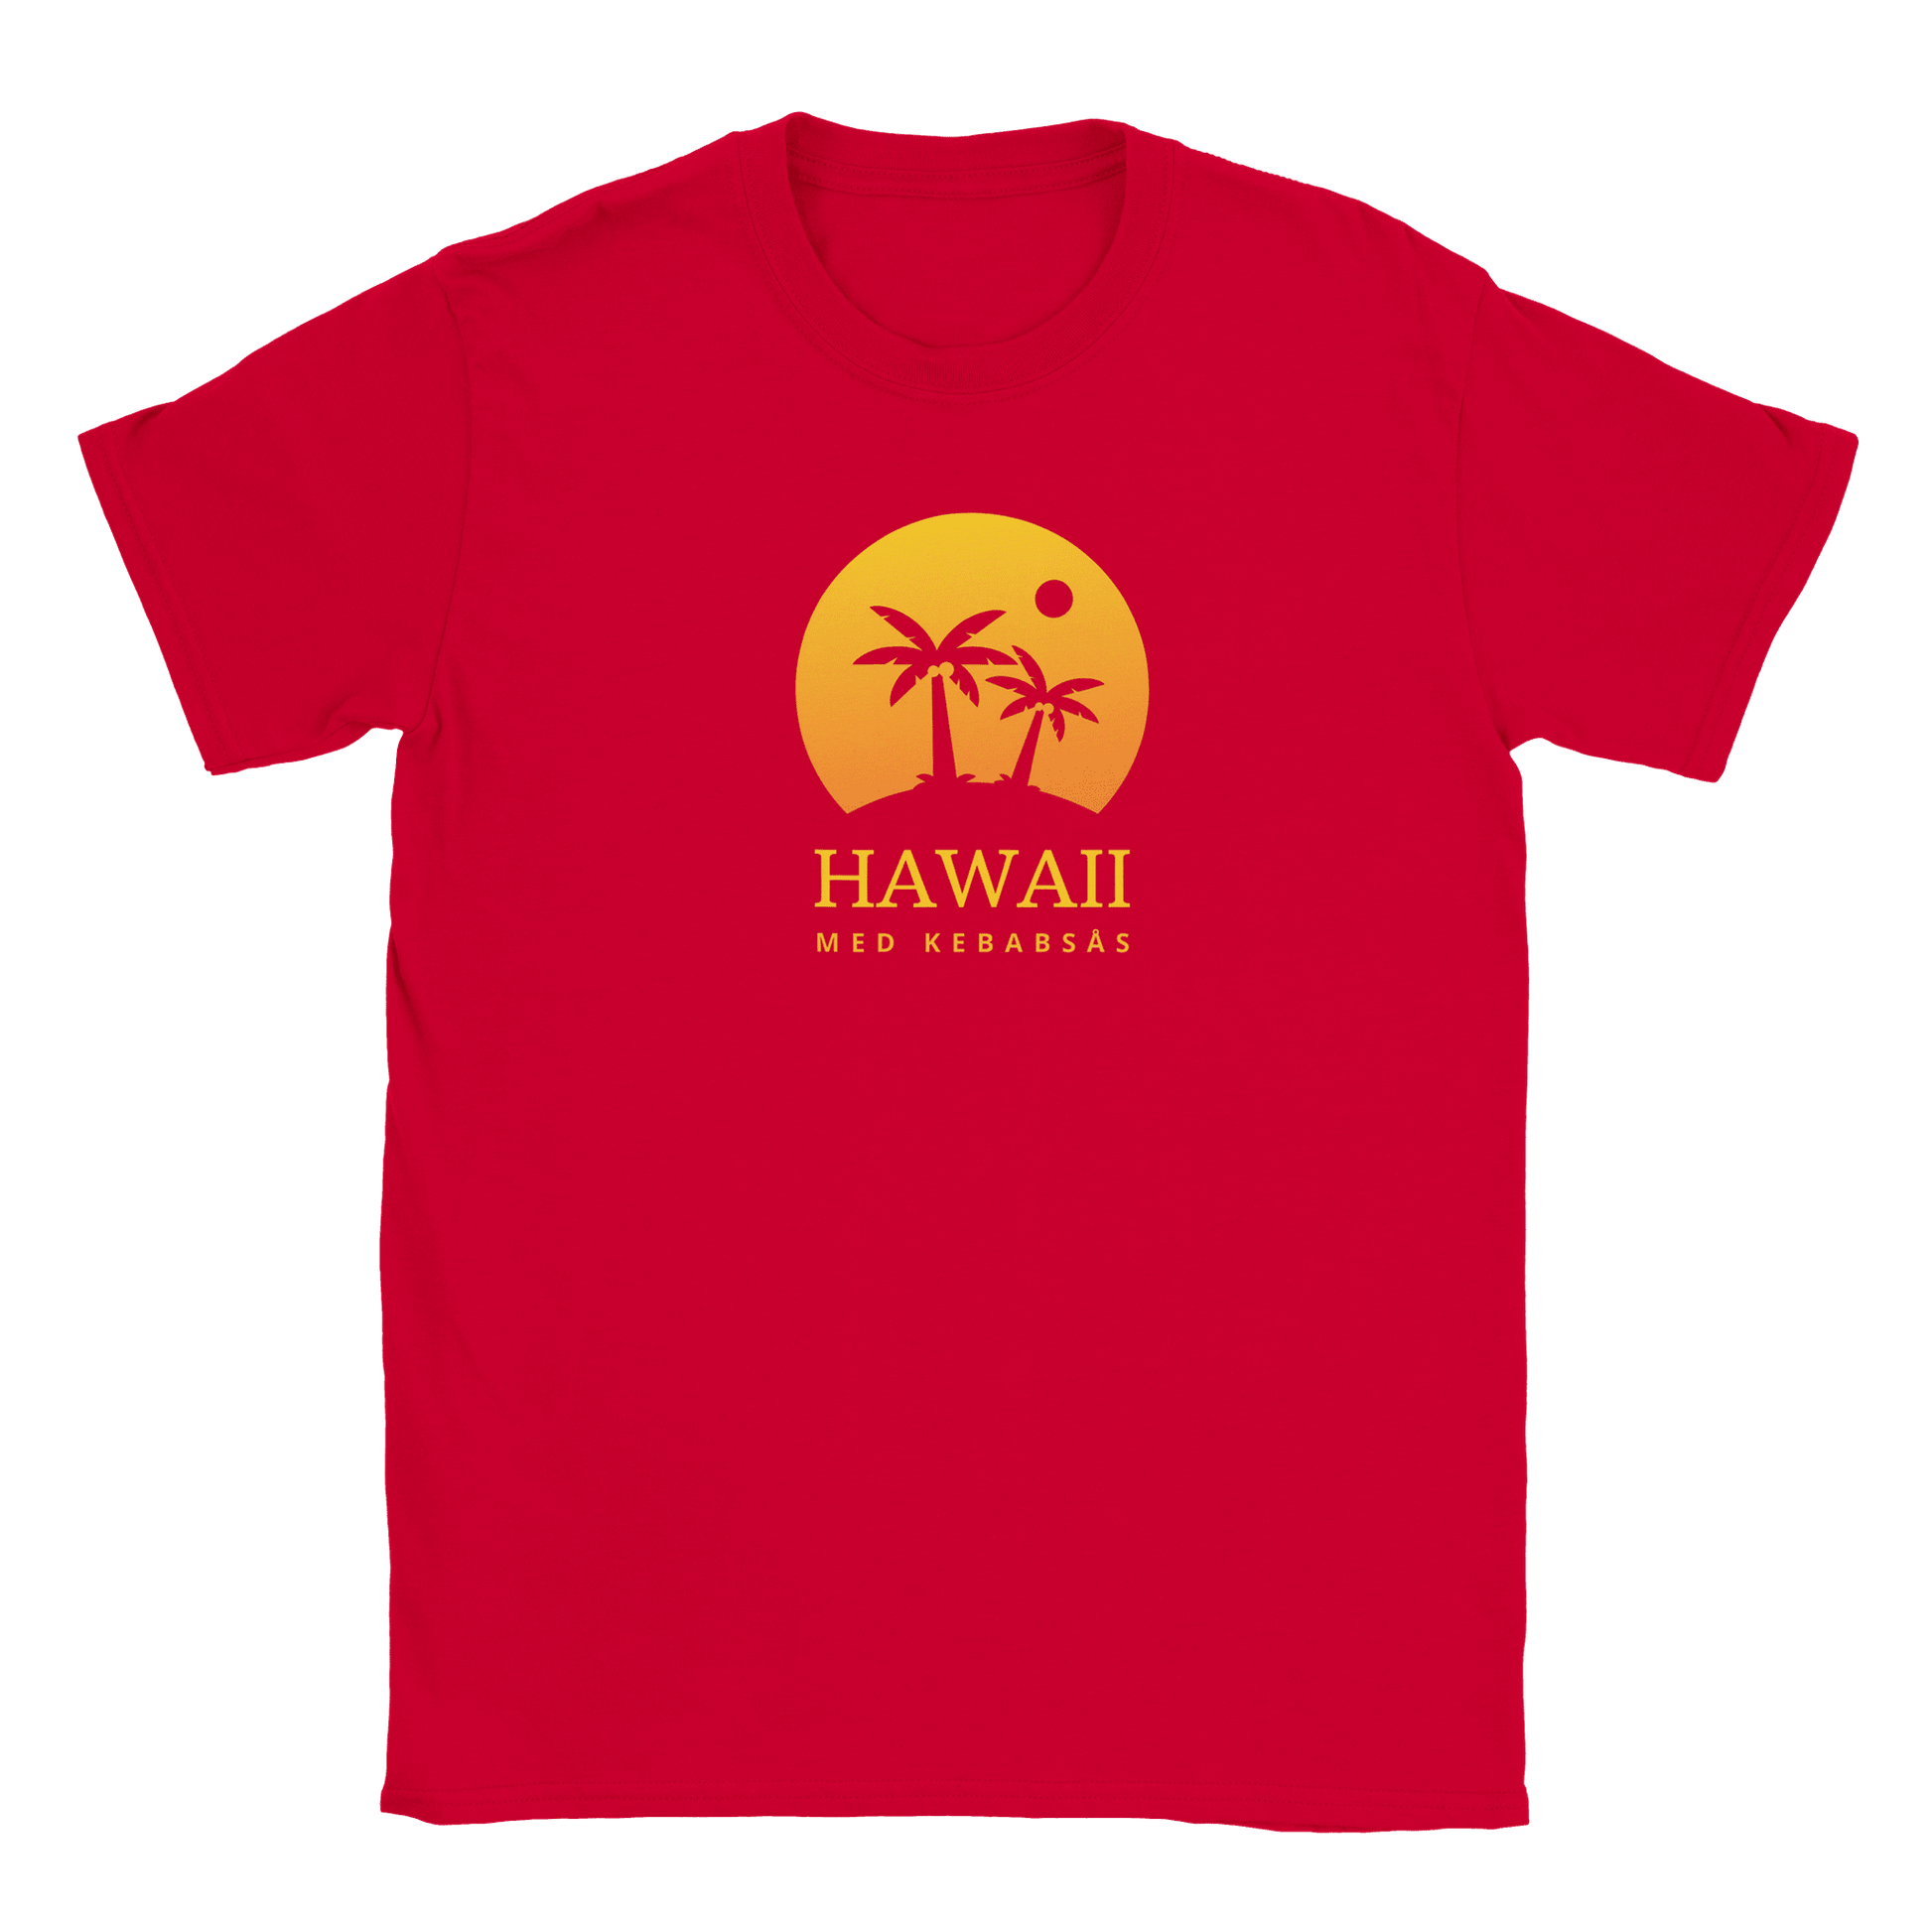 Hawaii med kebabsås - T-shirt för barn Röd